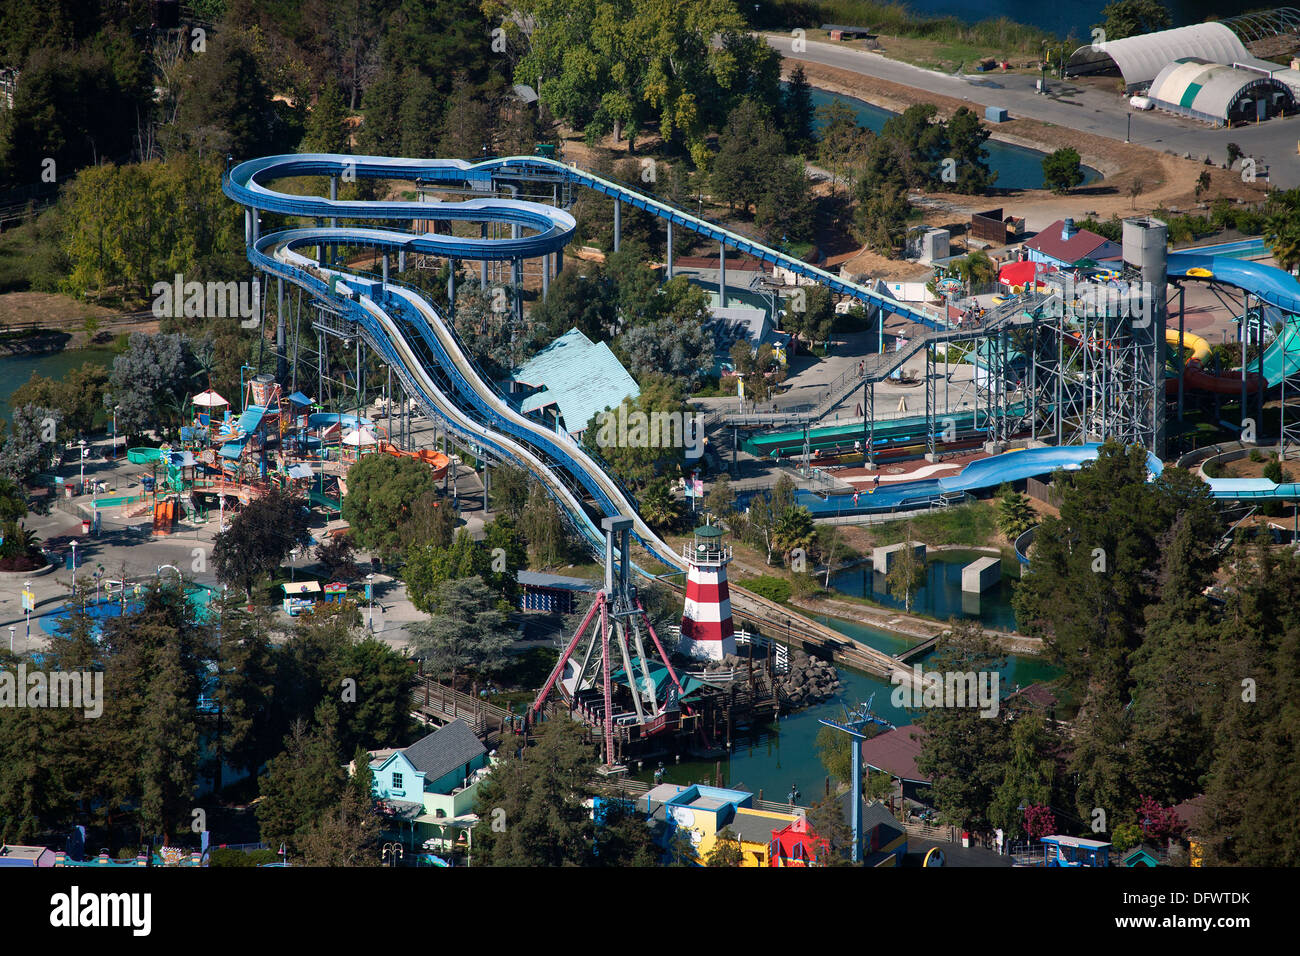 Photographie aérienne California's Great America amusement park, Santa Clara, Californie Banque D'Images